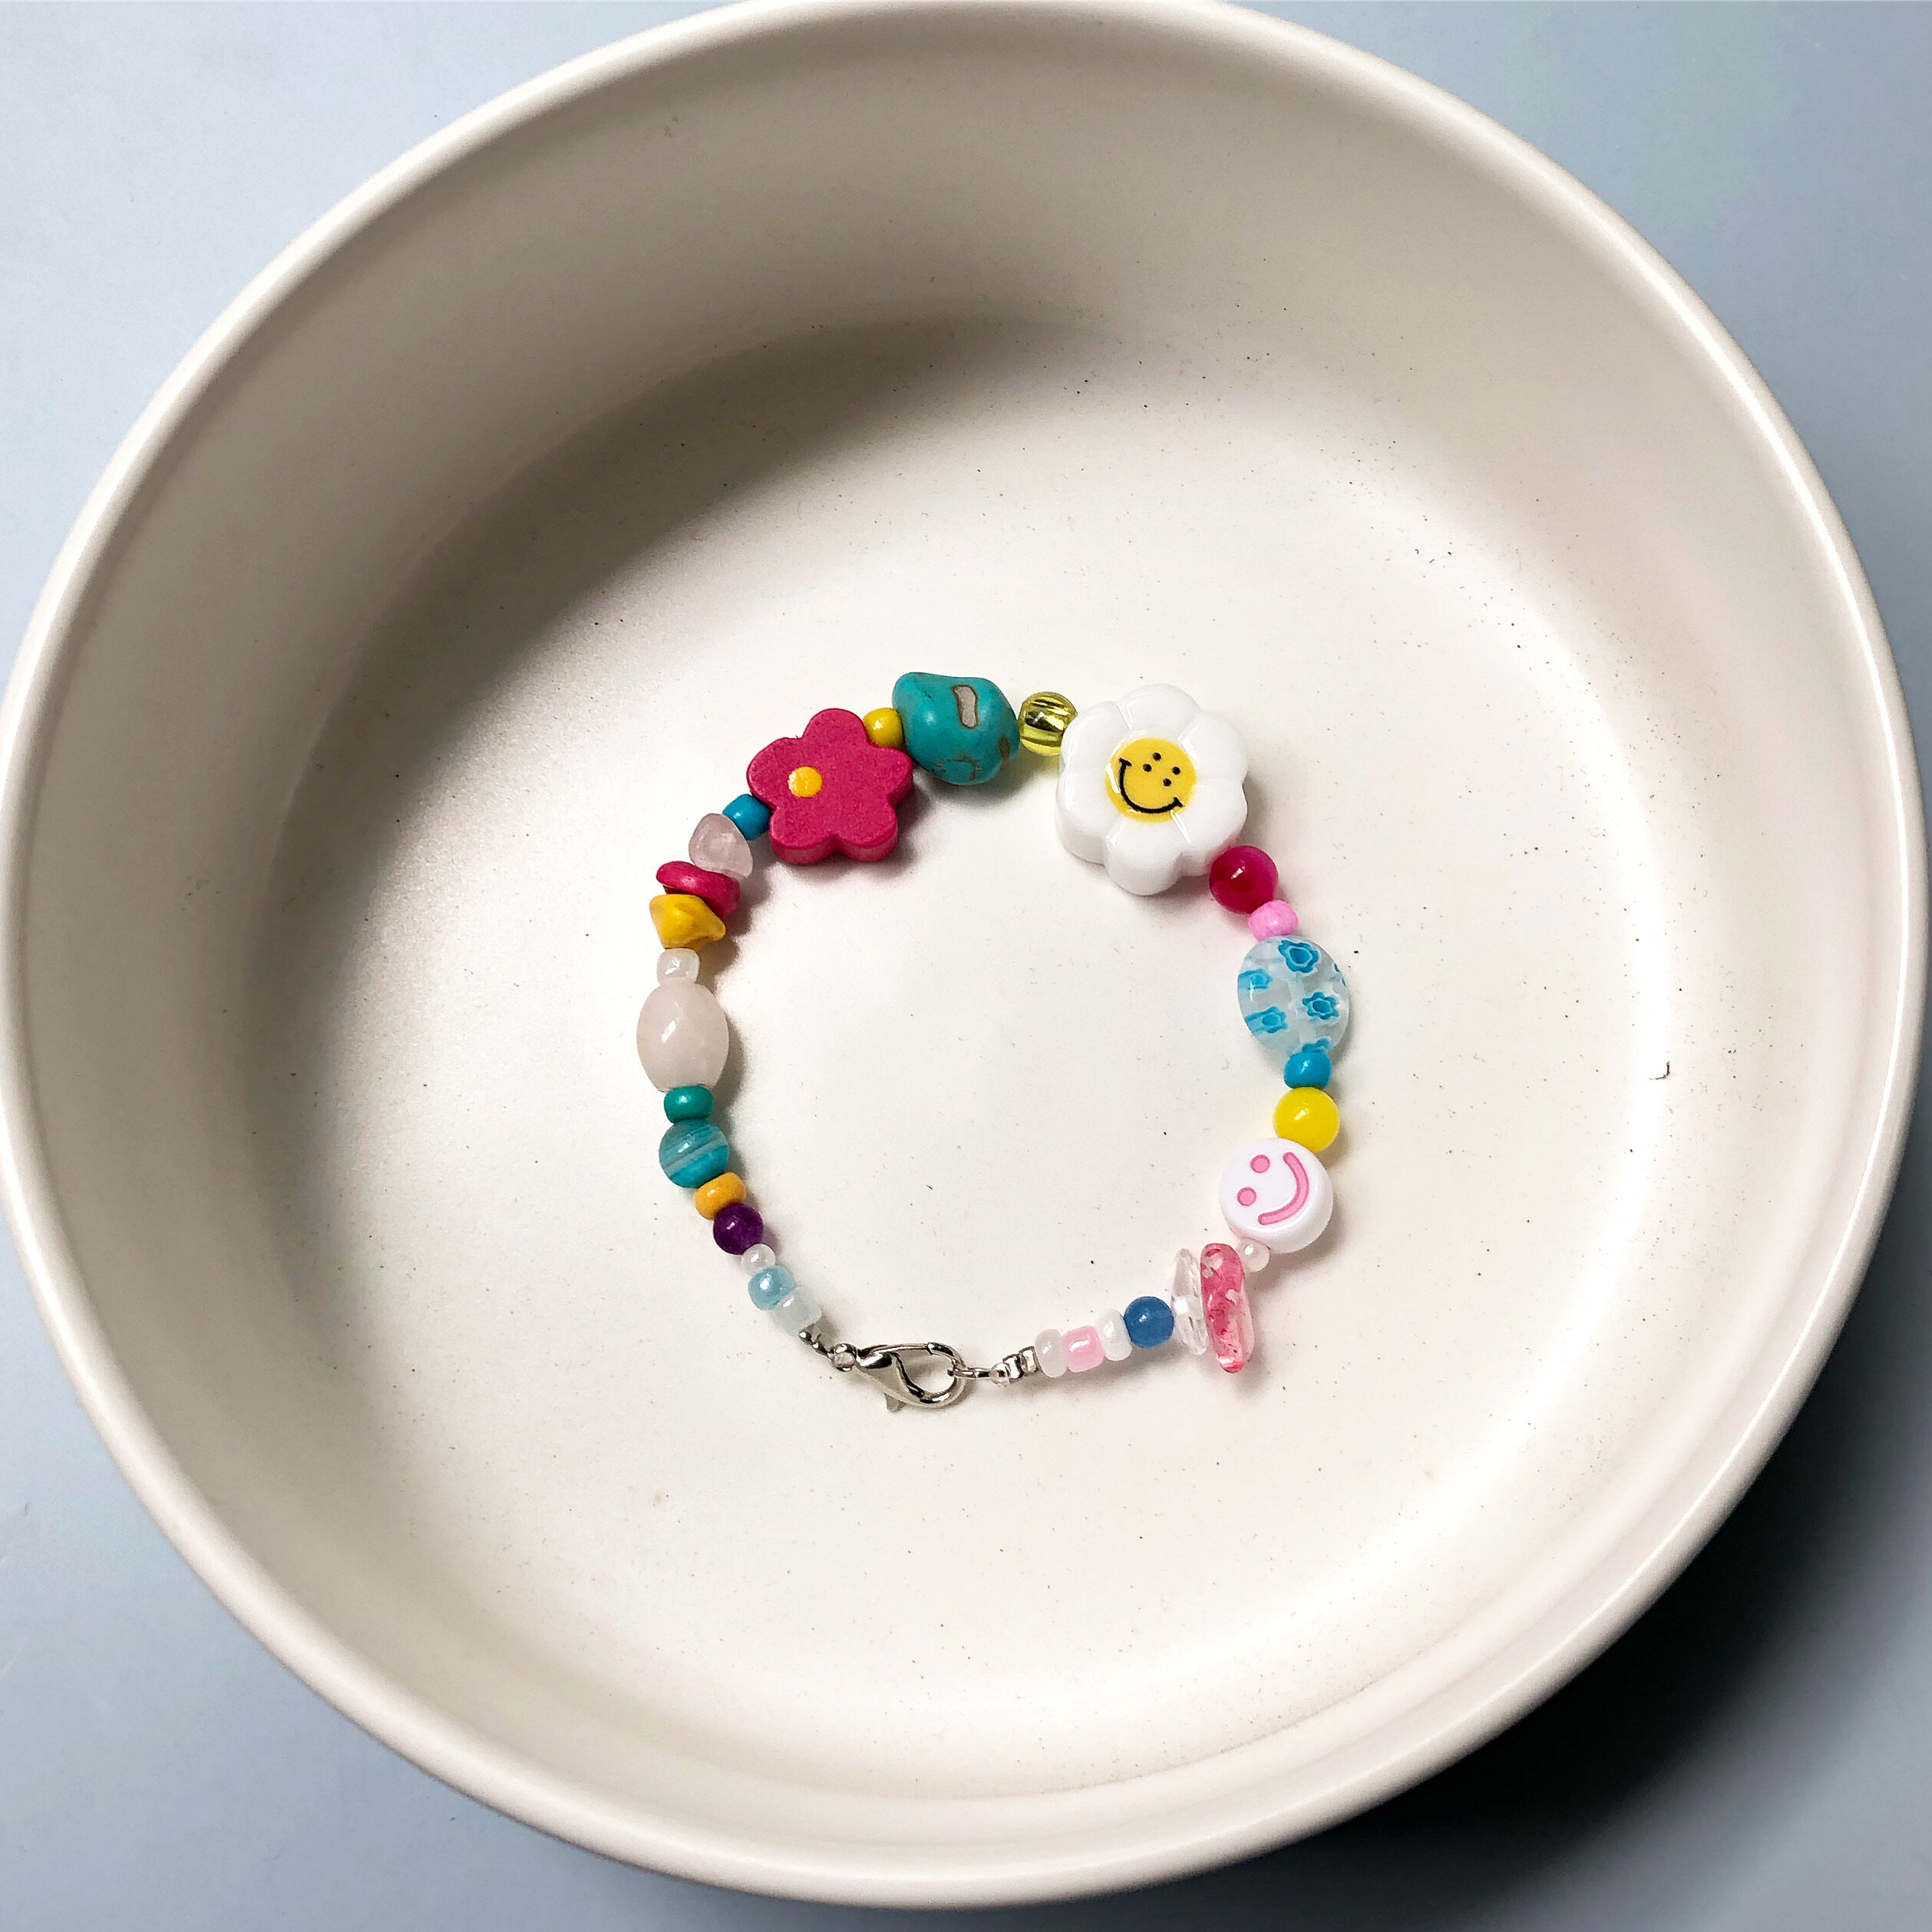 LETSGETAWAY - Bracelet (Preorder 10 days) / สร้อยข้อมือ หินธรรมชาติ รุ่น Funky Candy  (สินค้าจัดส่งหลังสั่งซื้อ 10 วันทำการ)